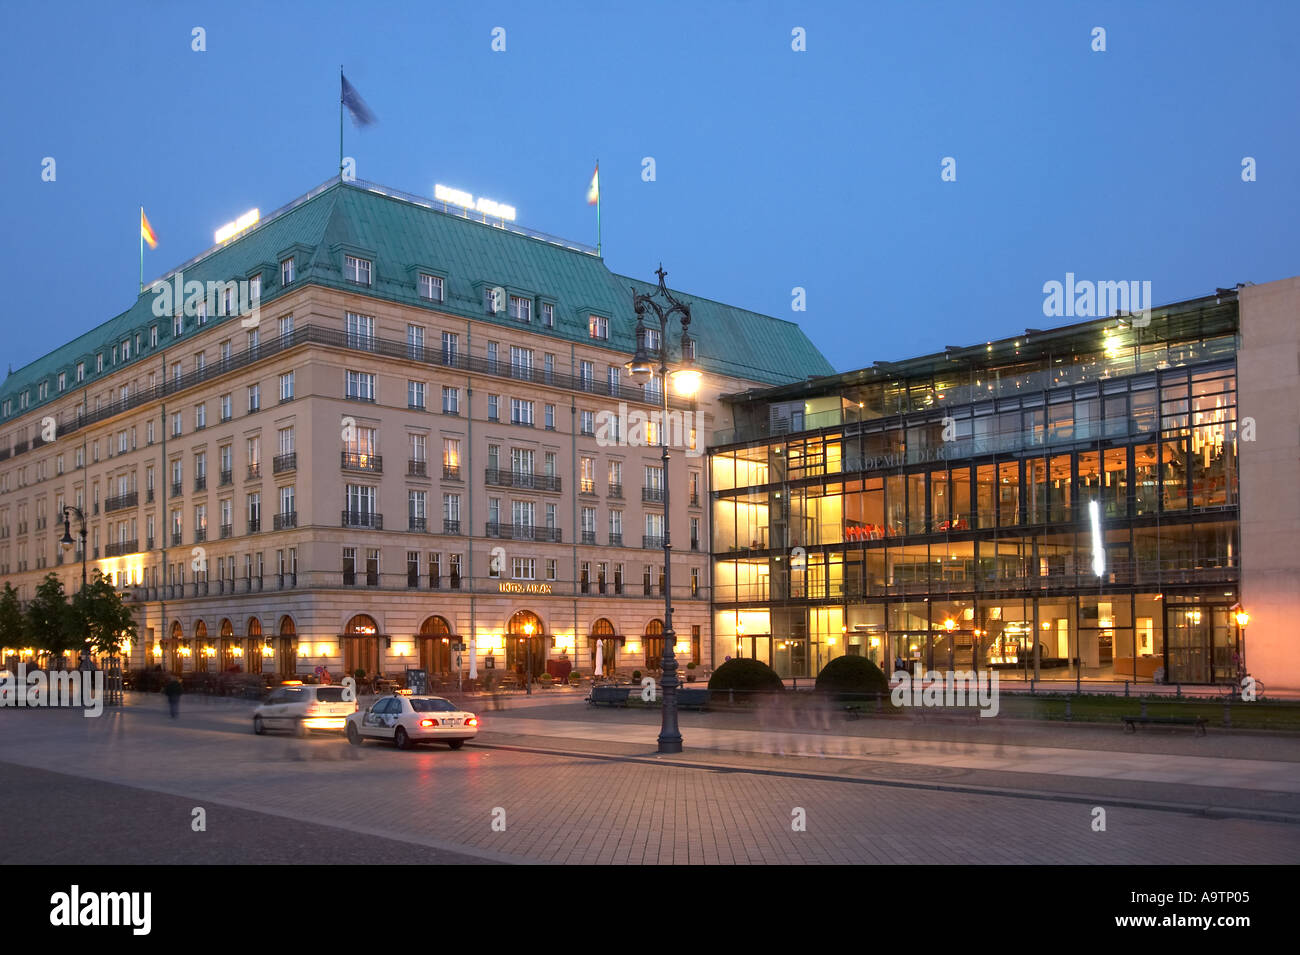 Berlin Paris Square Hotel Adlon Akademie der Kunst Architekt Guenter Behnisch, die das Olympüic-Stadion in München gebaut Stockfoto